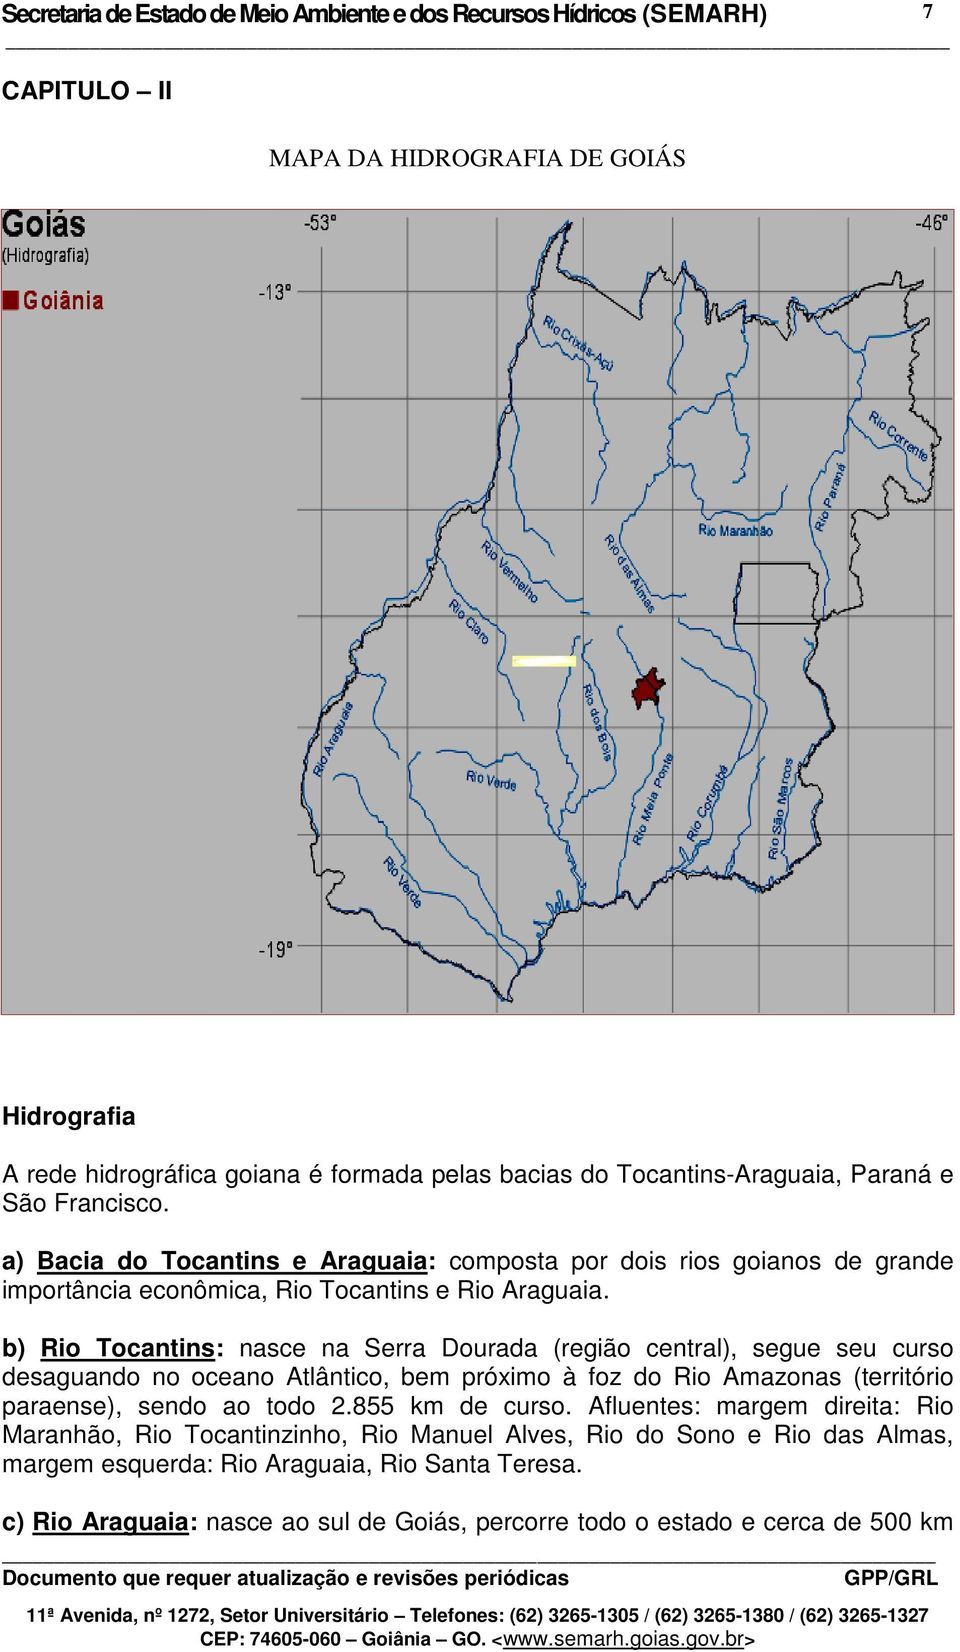 b) Rio Tocantins: nasce na Serra Dourada (região central), segue seu curso desaguando no oceano Atlântico, bem próximo à foz do Rio Amazonas (território paraense), sendo ao todo